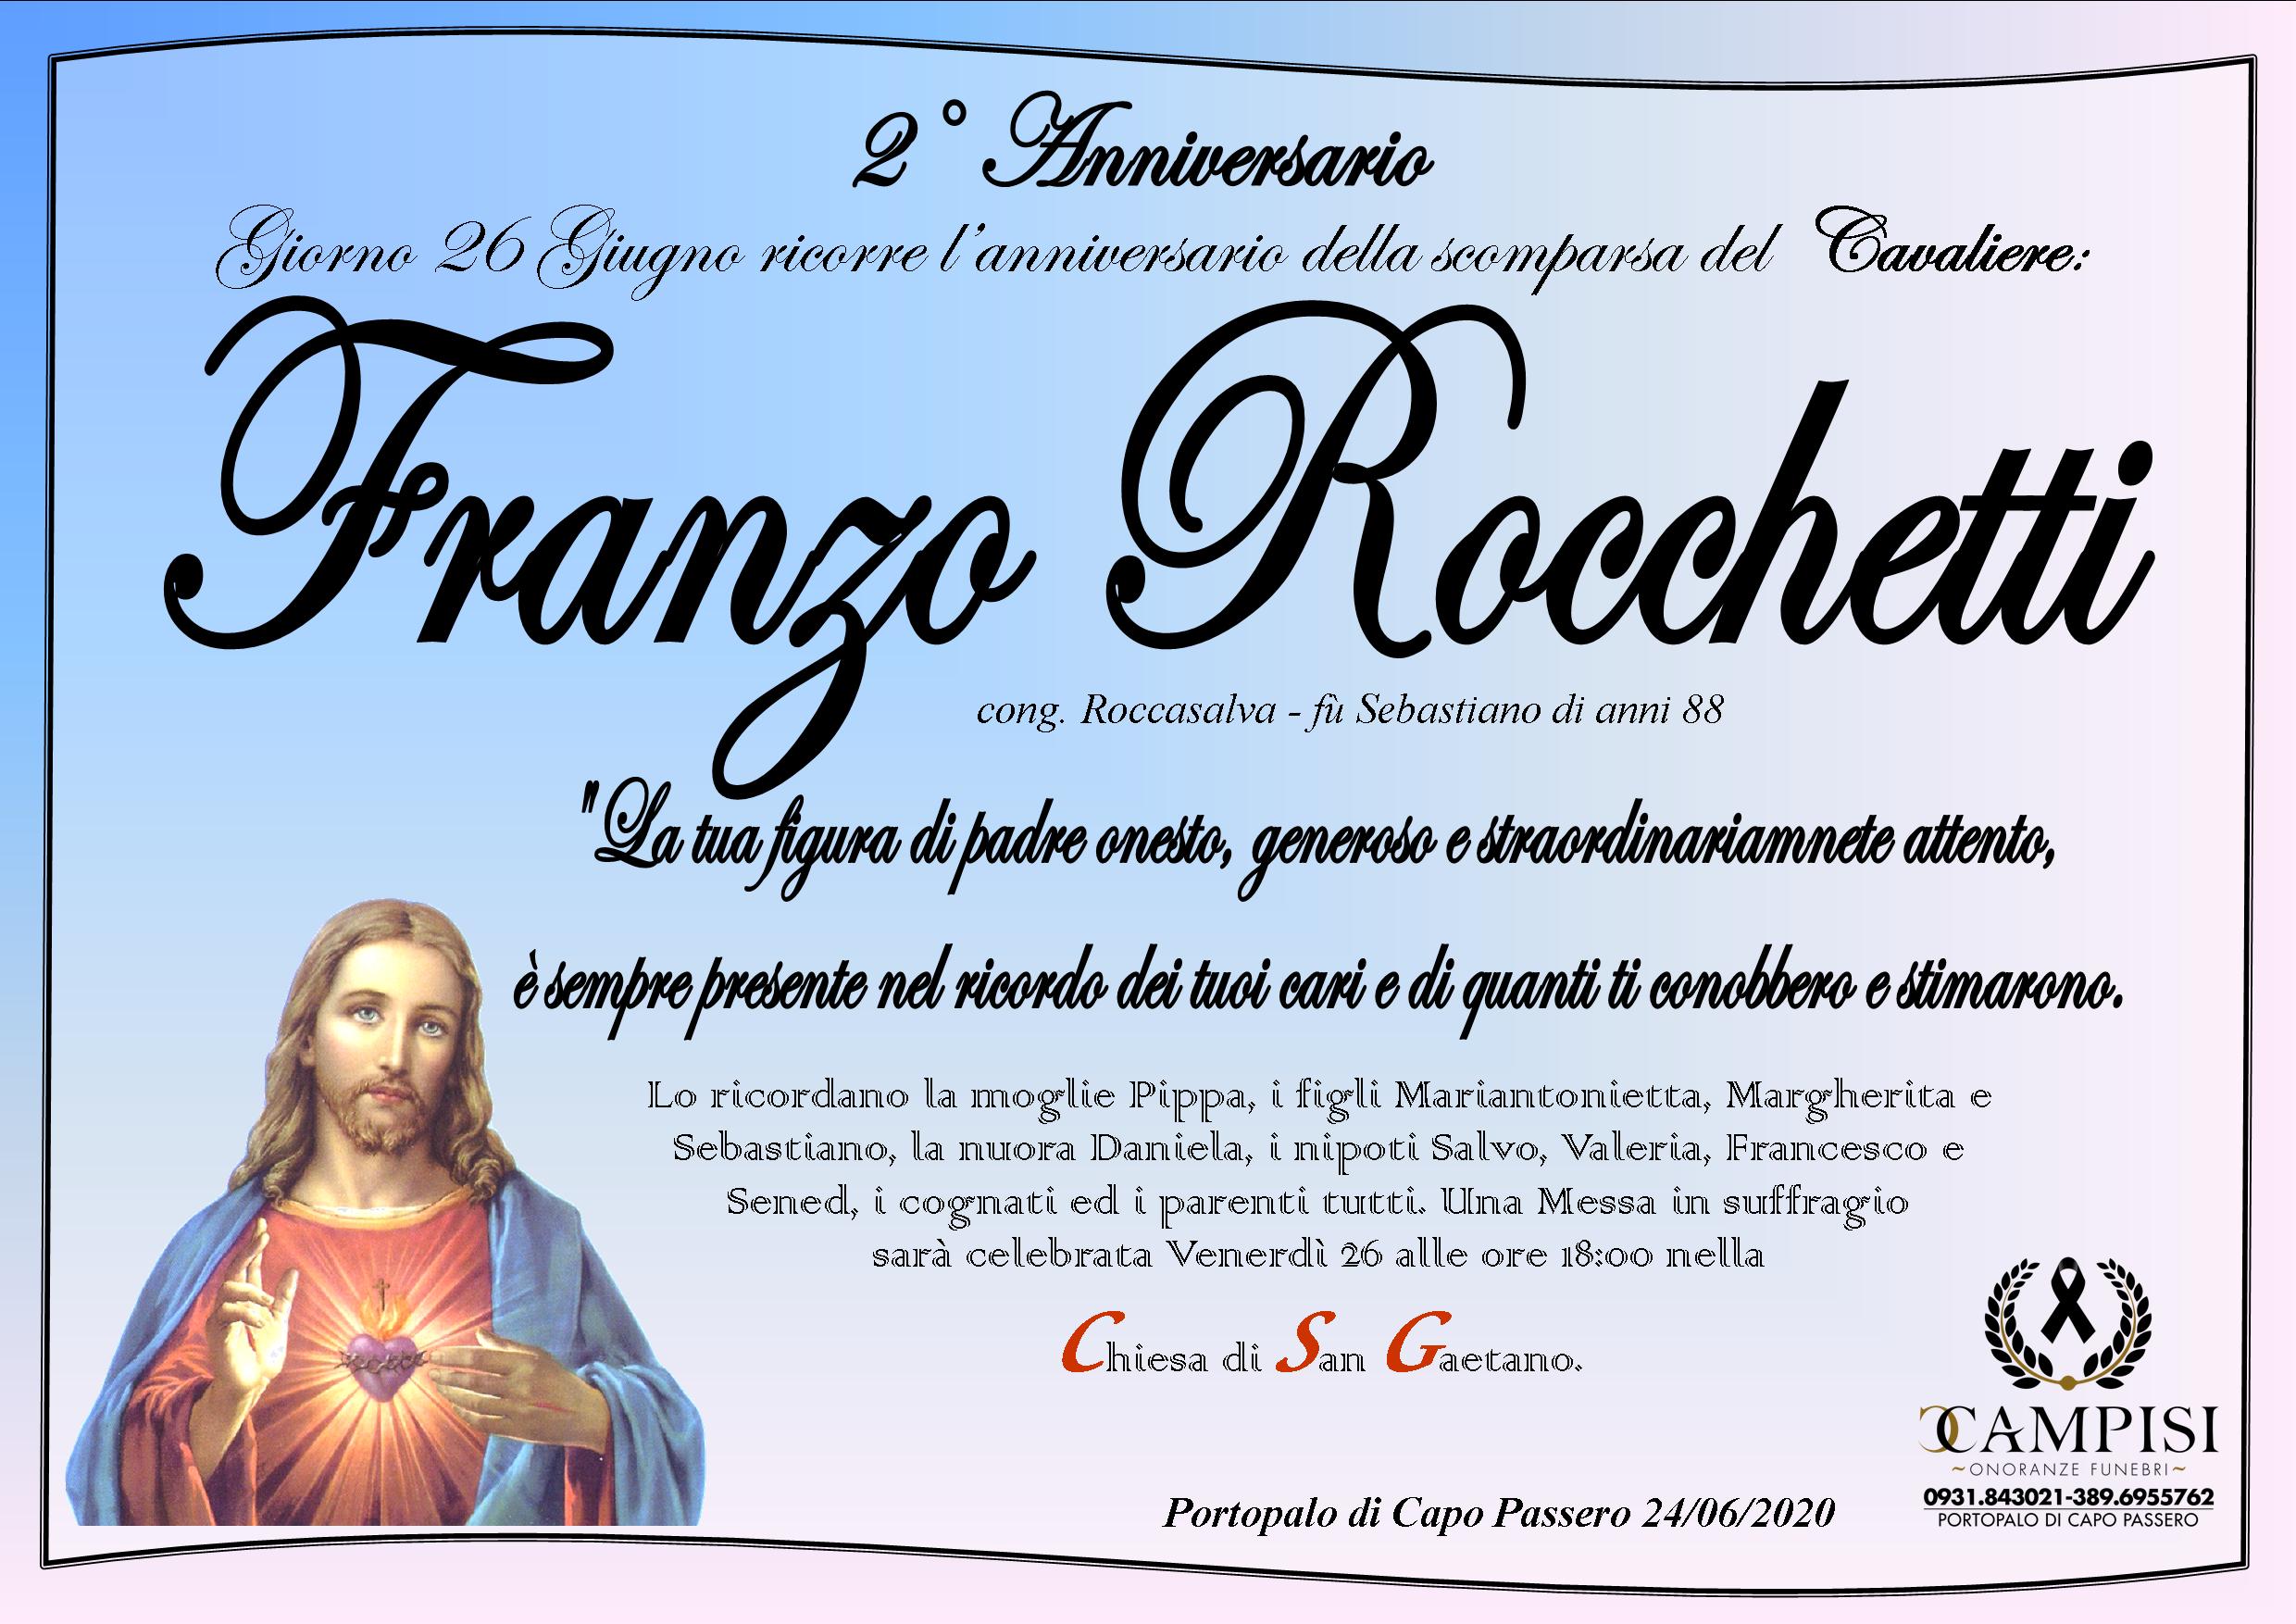 Franzo Rocchetti